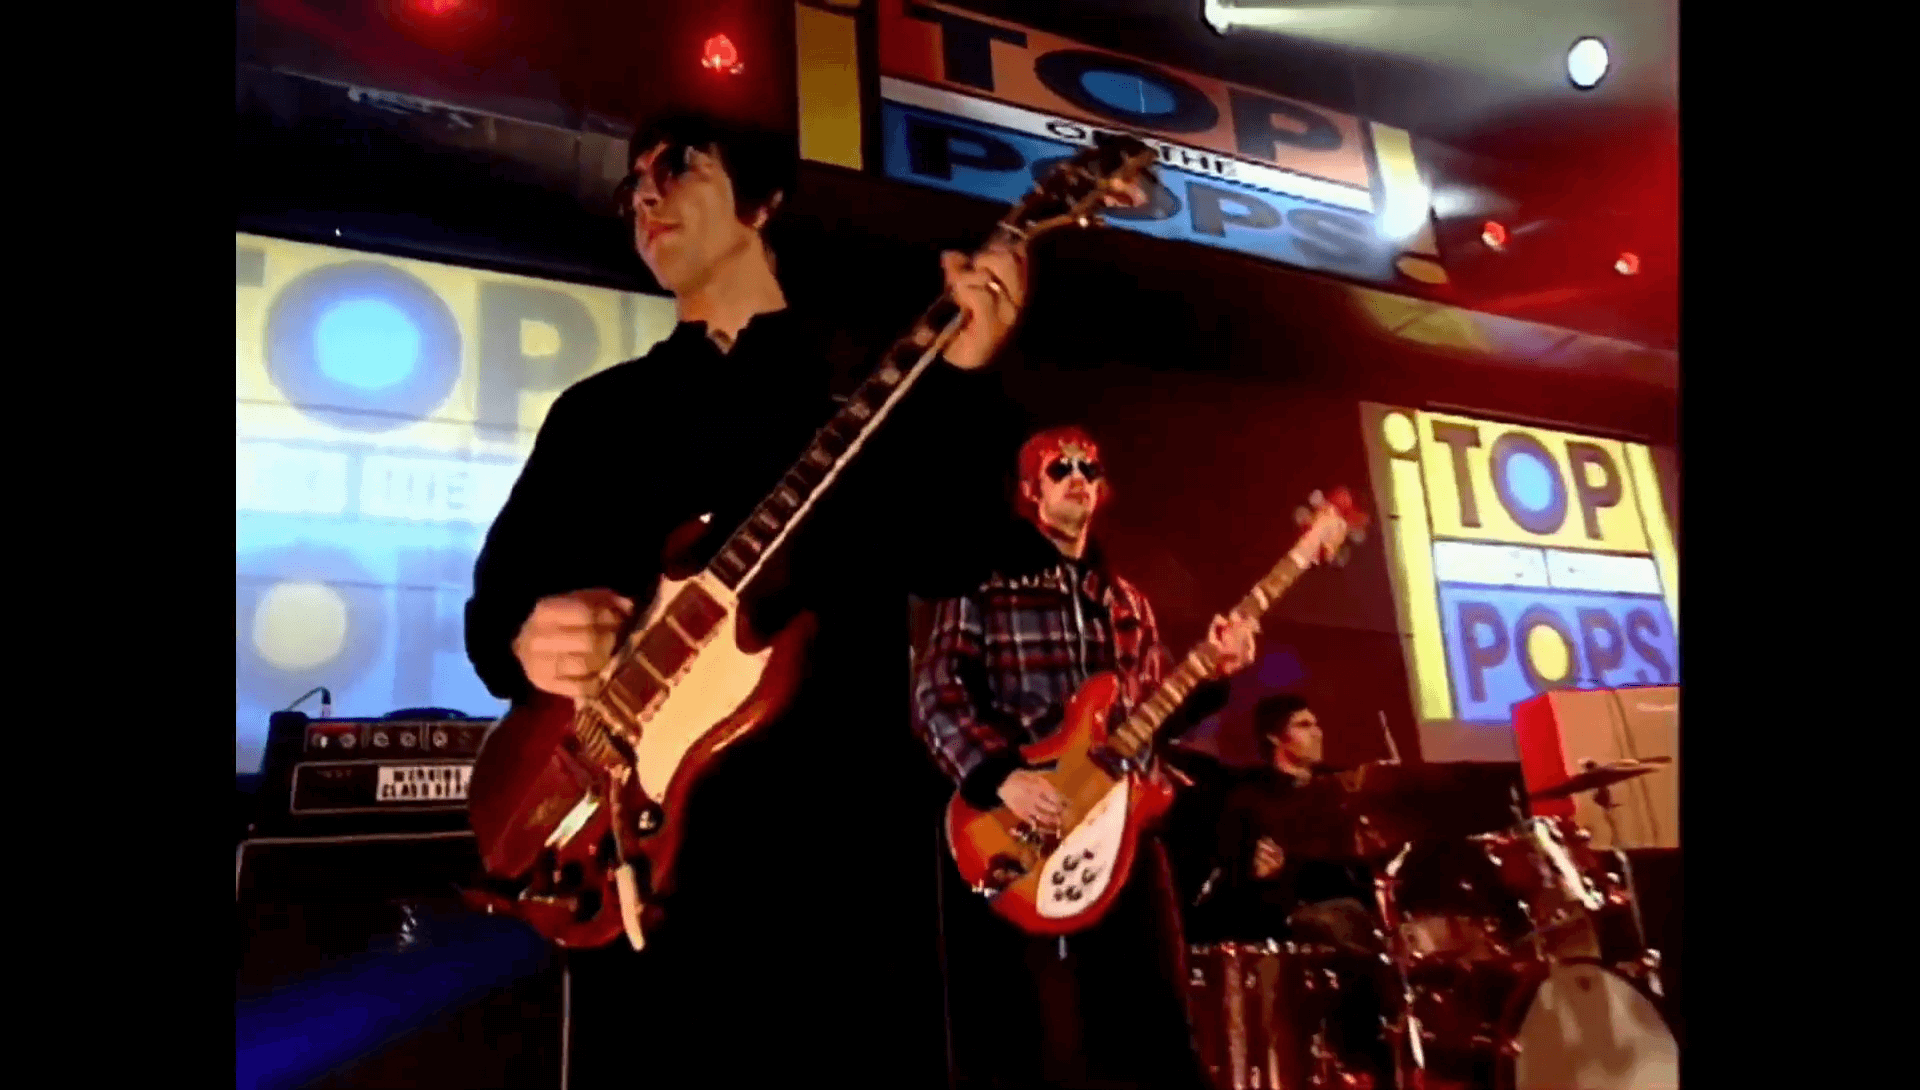 Oasis at Elstree Studios, London UK - 